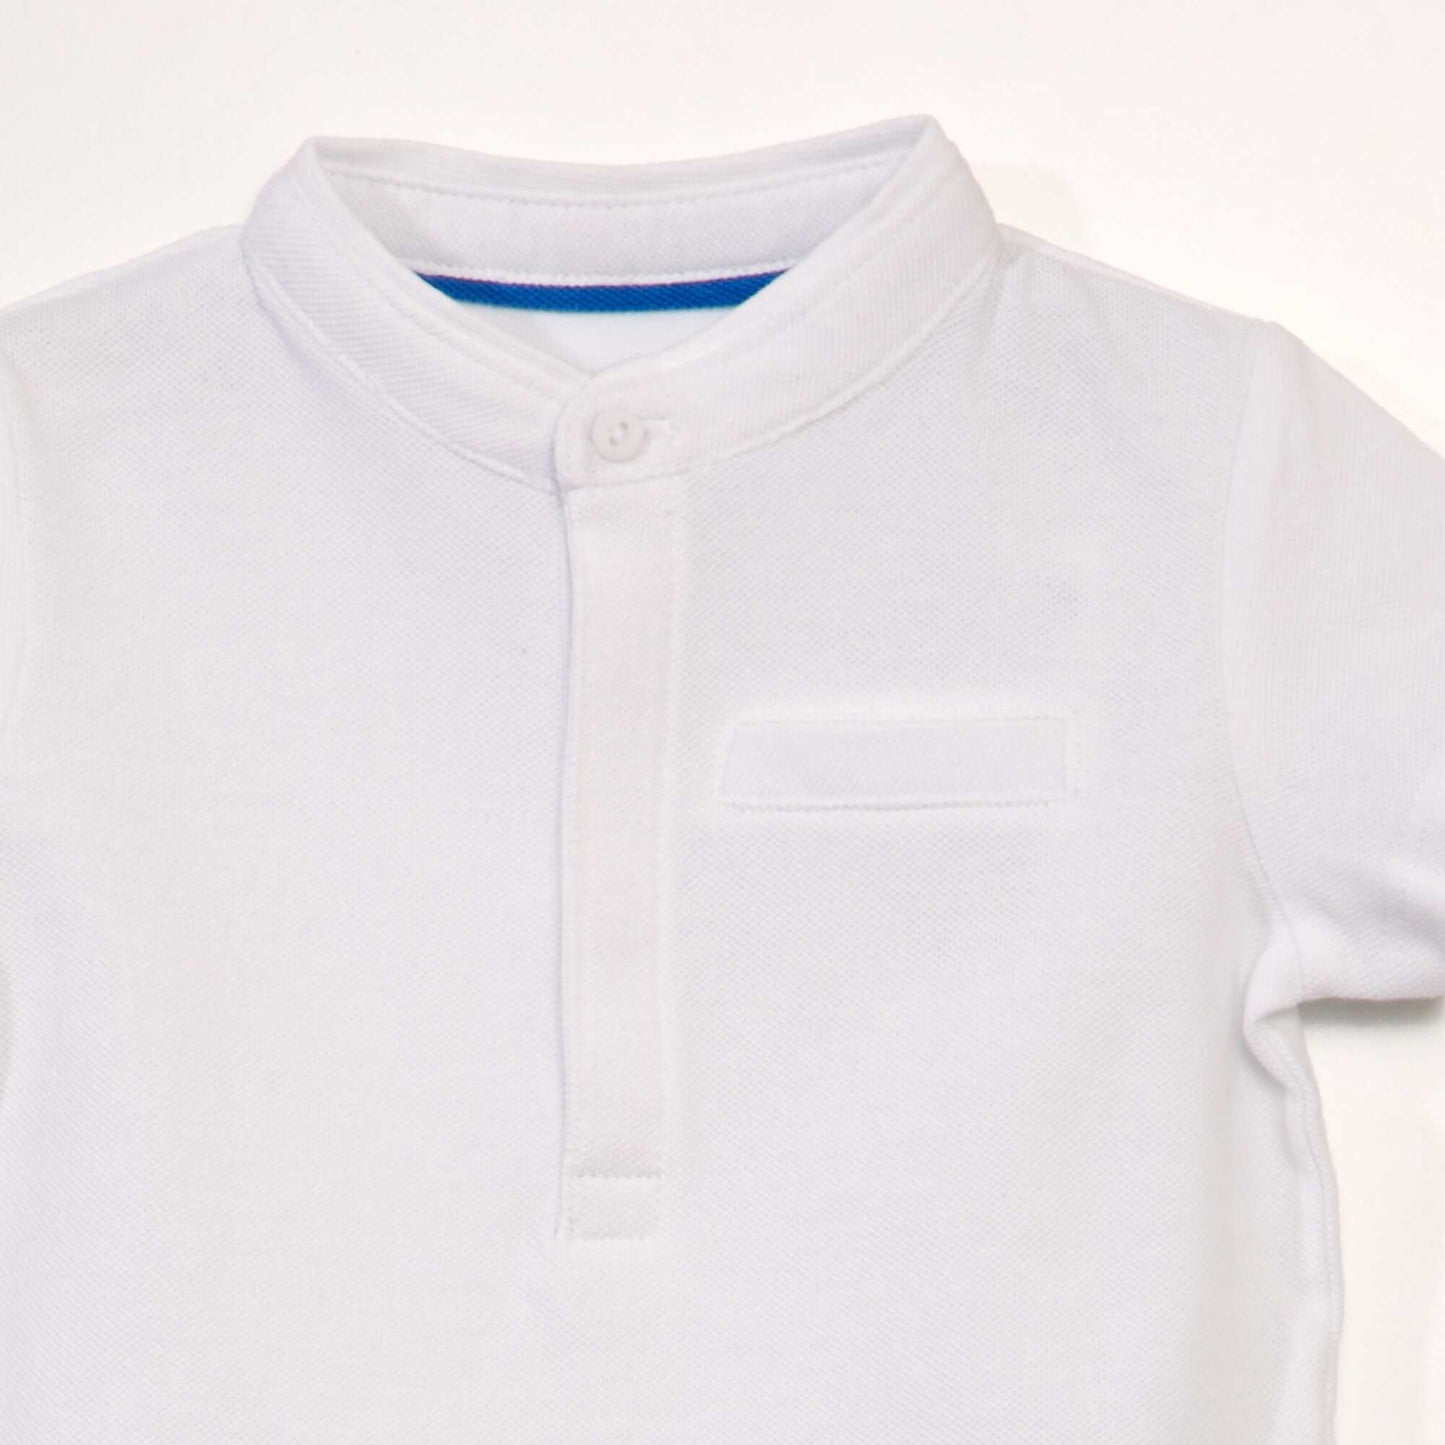 Piqué knit polo shirt with mandarin collar white